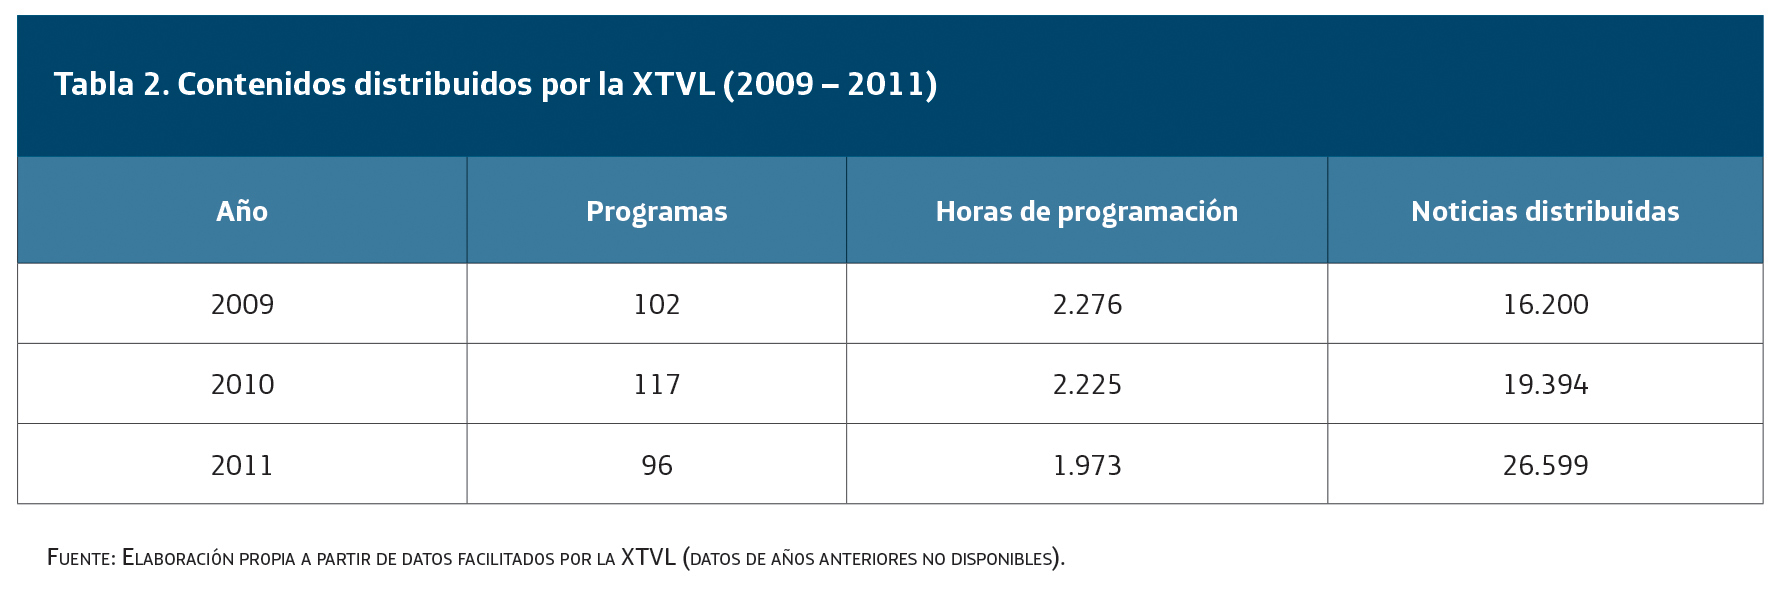 Contenidos distribuidos por la XTVL (2009-2011)